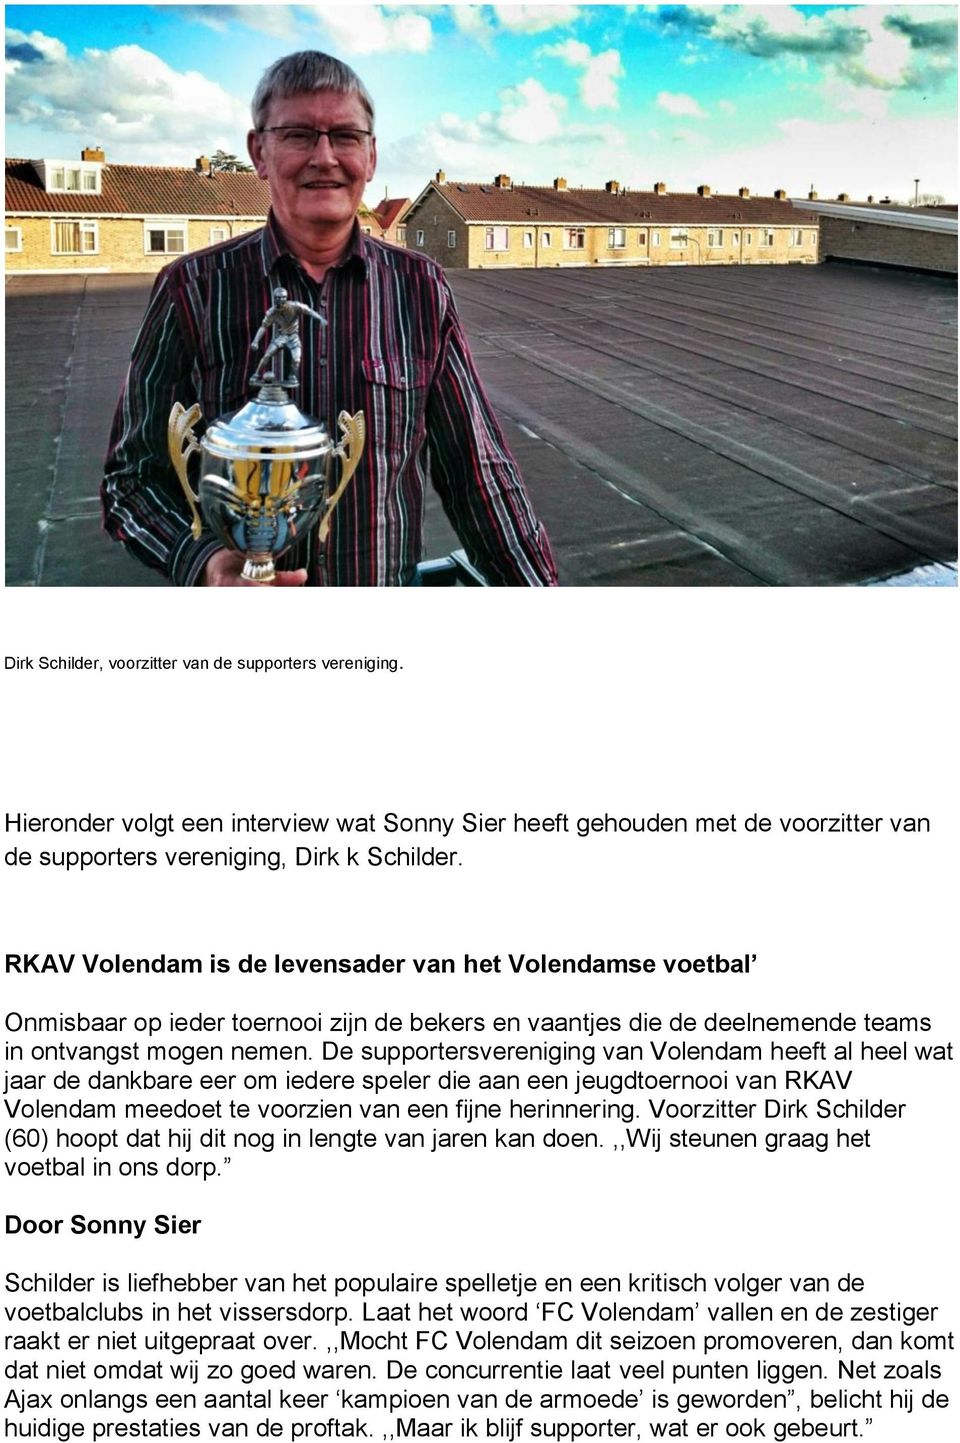 De supportersvereniging van Volendam heeft al heel wat jaar de dankbare eer om iedere speler die aan een jeugdtoernooi van RKAV Volendam meedoet te voorzien van een fijne herinnering.